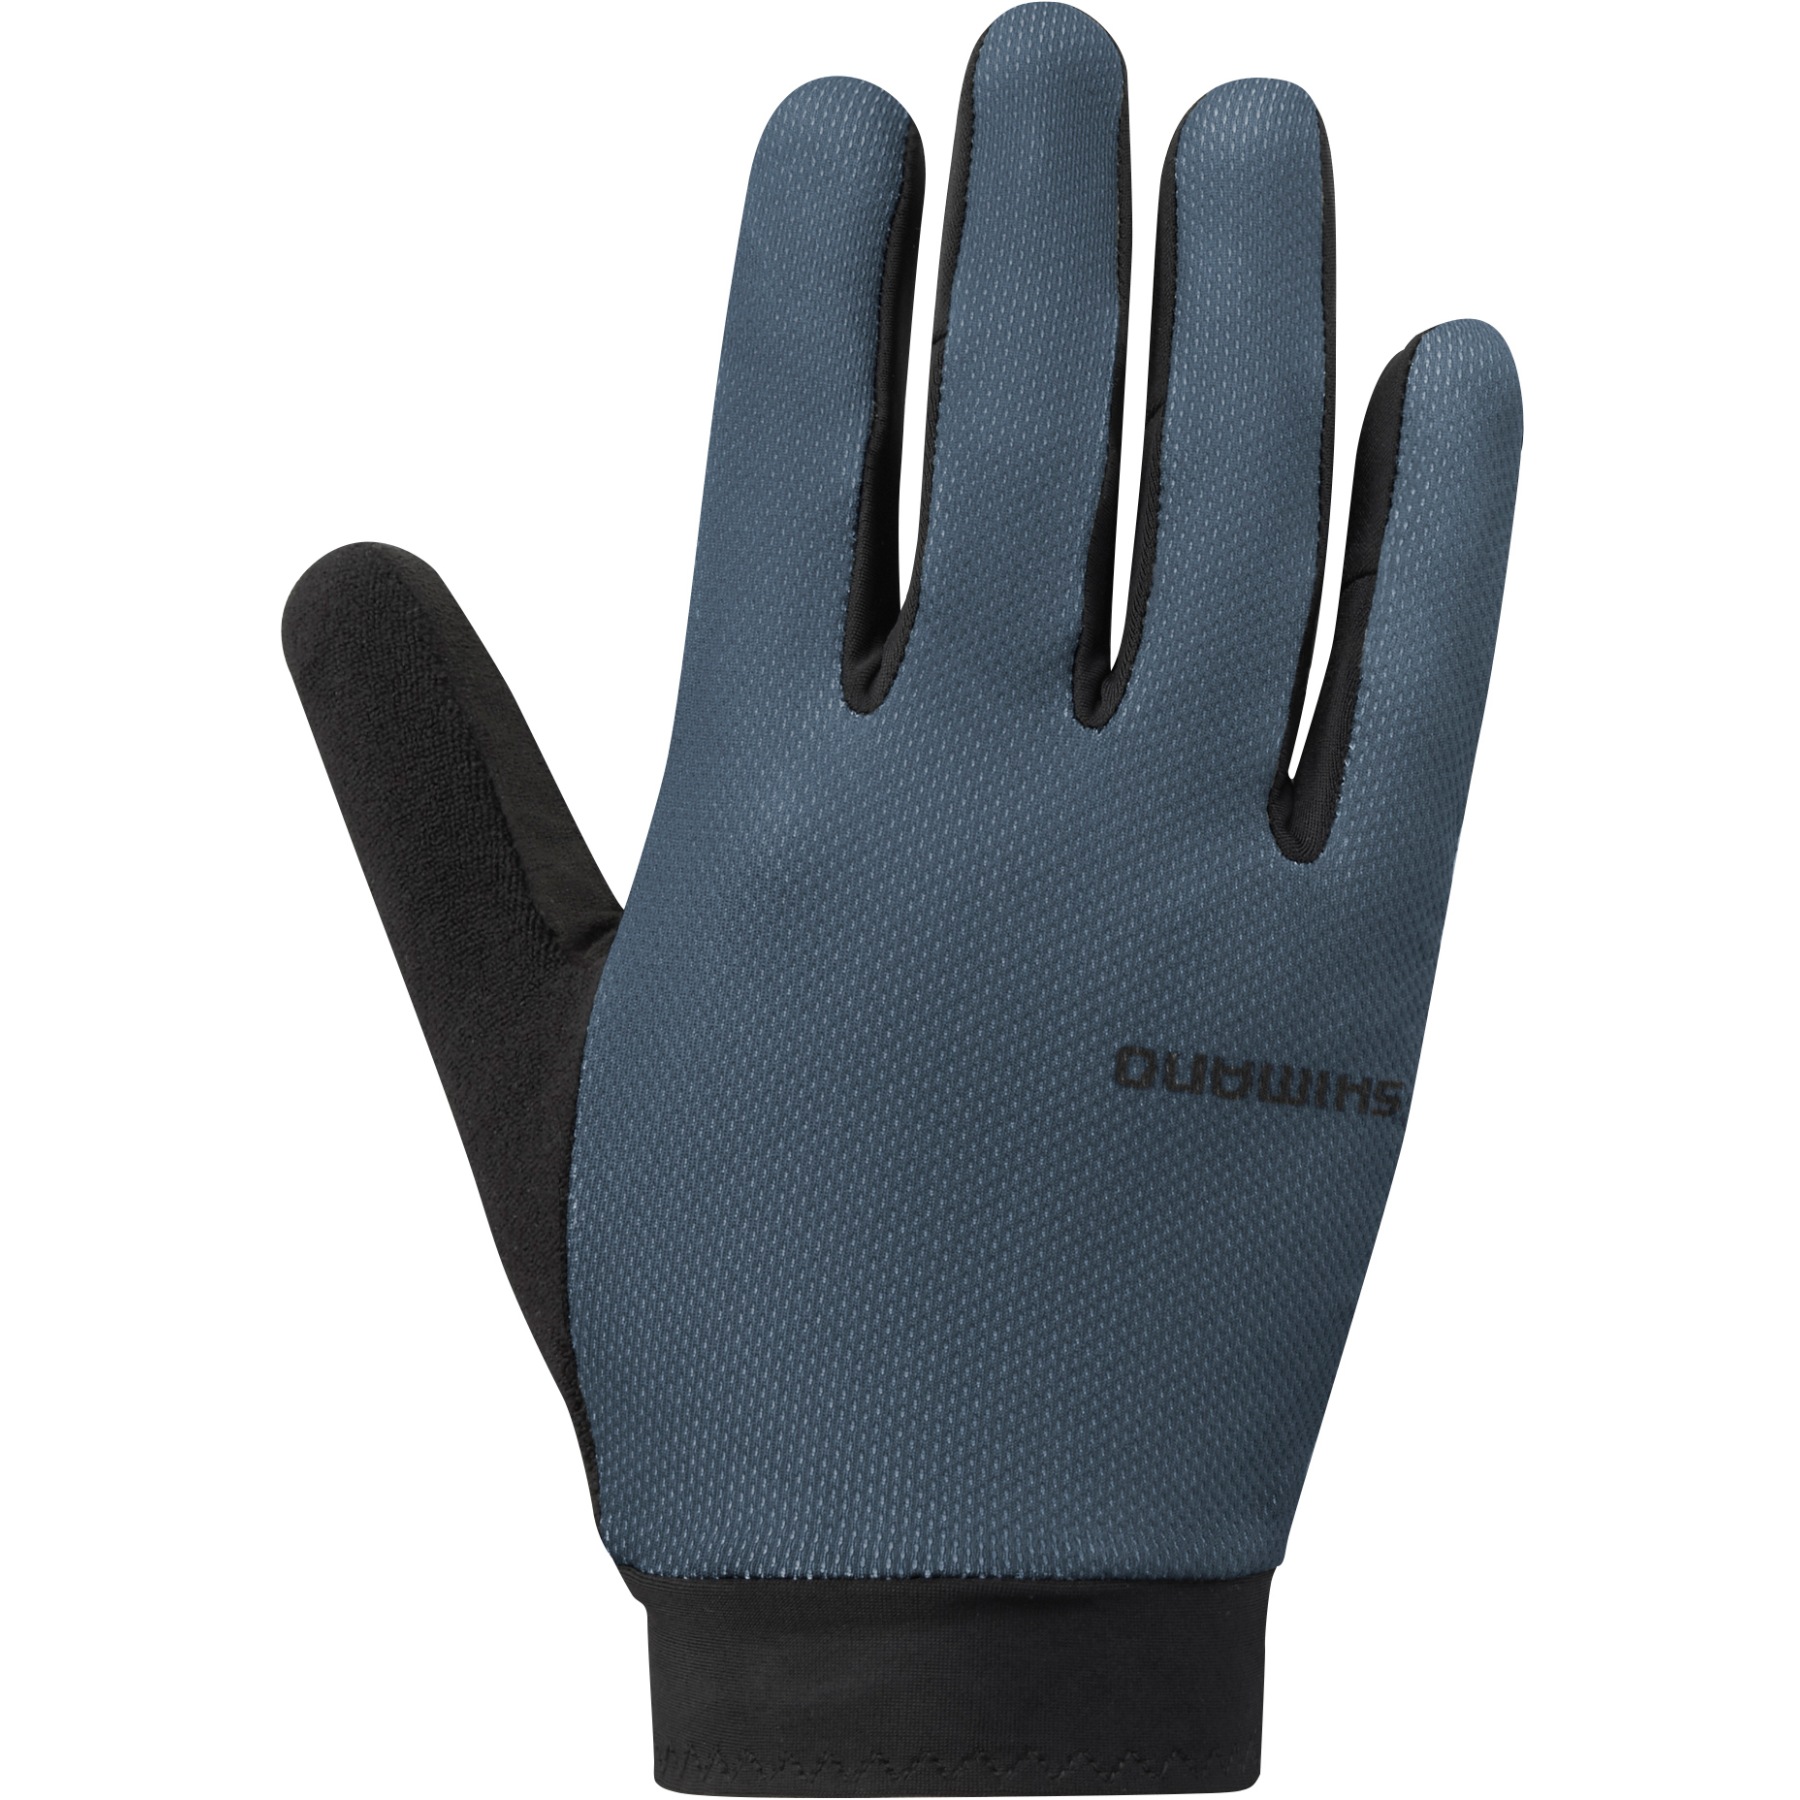 Productfoto van Shimano Explorer Handschoenen Heren - blue gray